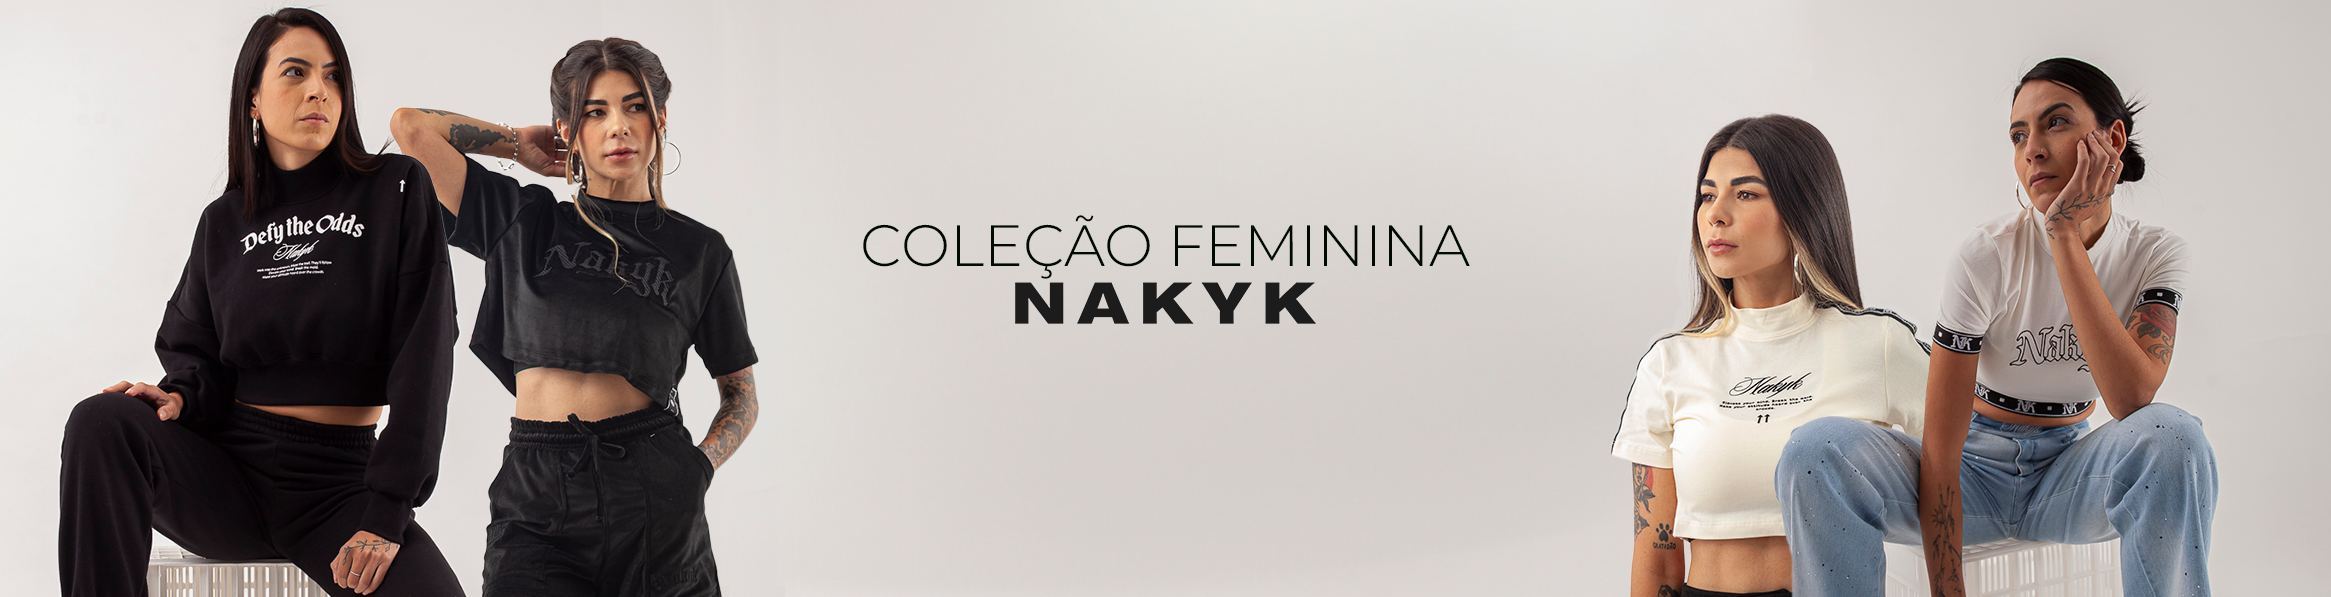 Coleção Feminina Nakyk